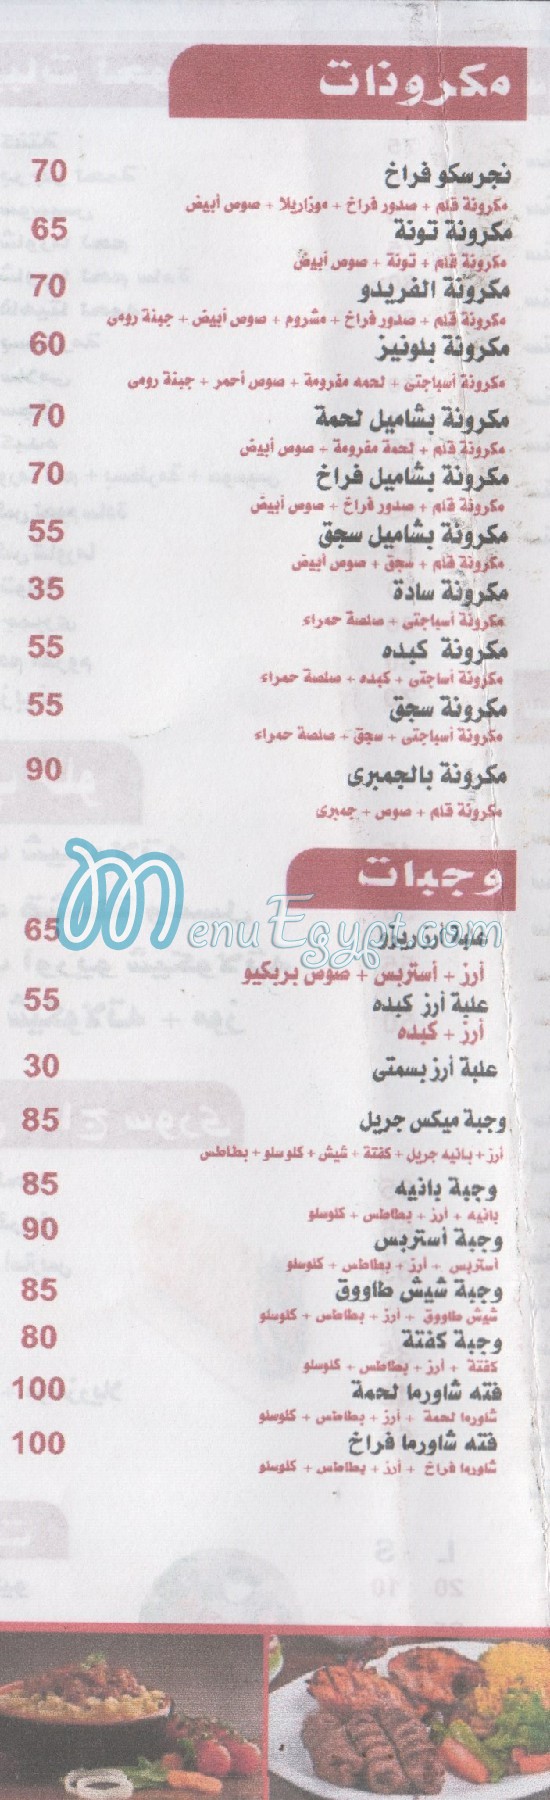 Nour El Sabah menu